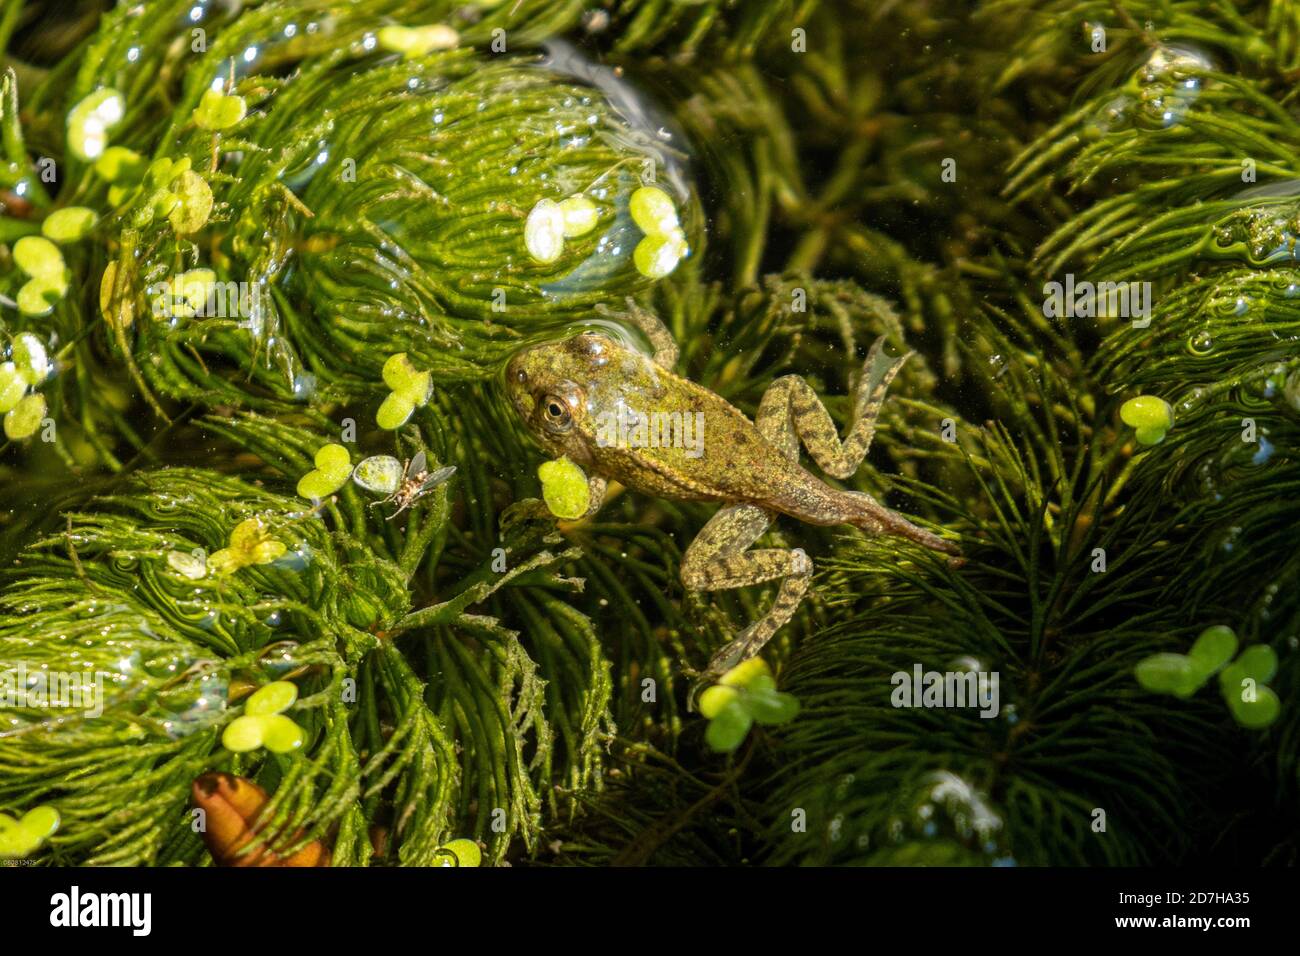 marsh frog, lake frog (Rana ridibunda, Pelophylax ridibundus), juvenile, shortly before finishing the metamorphosis, Germany, Bavaria Stock Photo